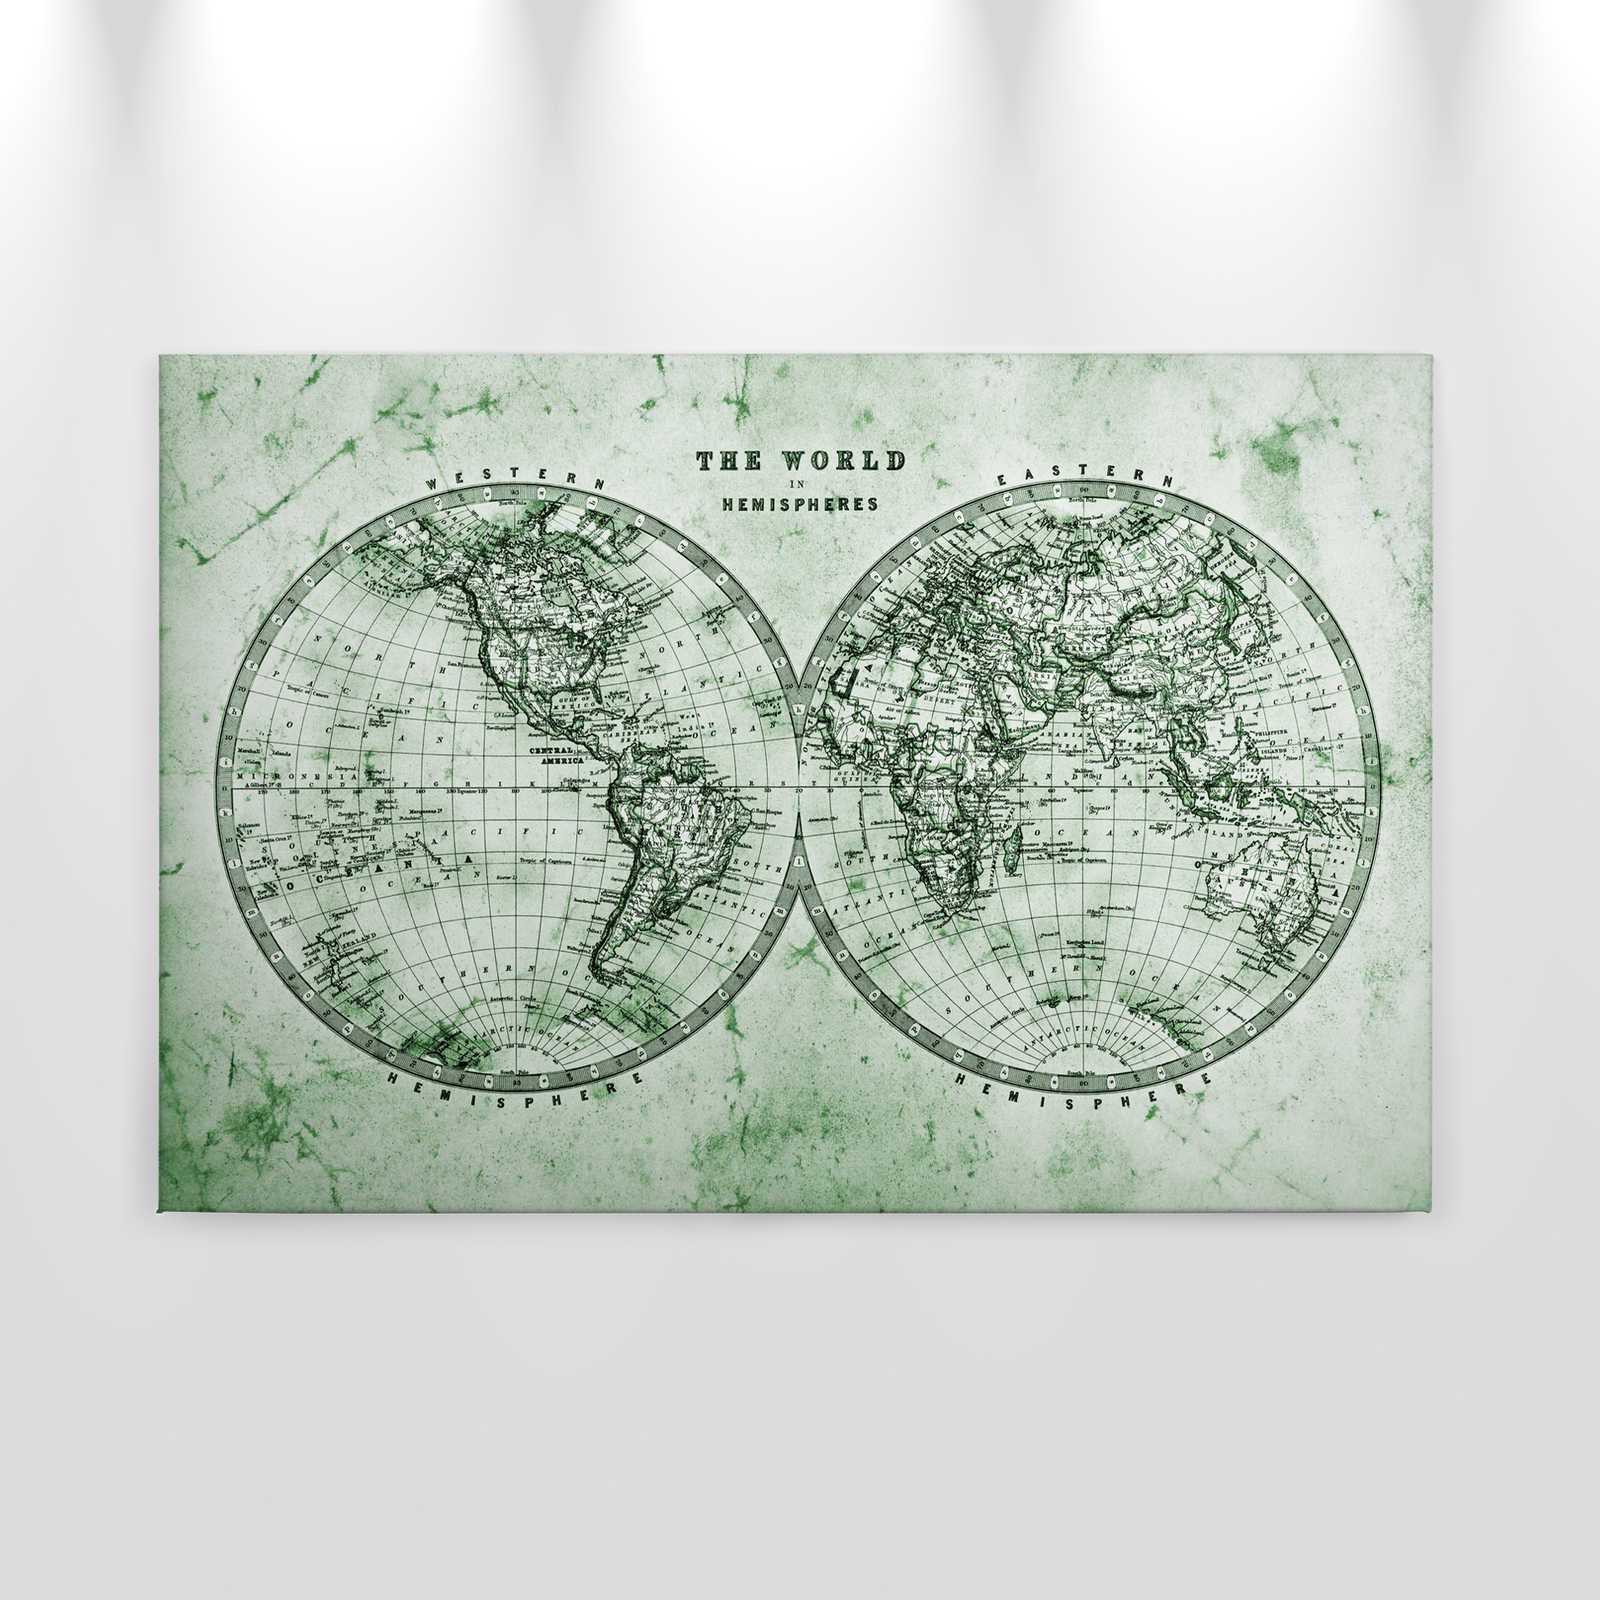             Leinwand mit Vintage Weltkarte in Hemisphären | grün, grau, weiß – 0,90 m x 0,60 m
        